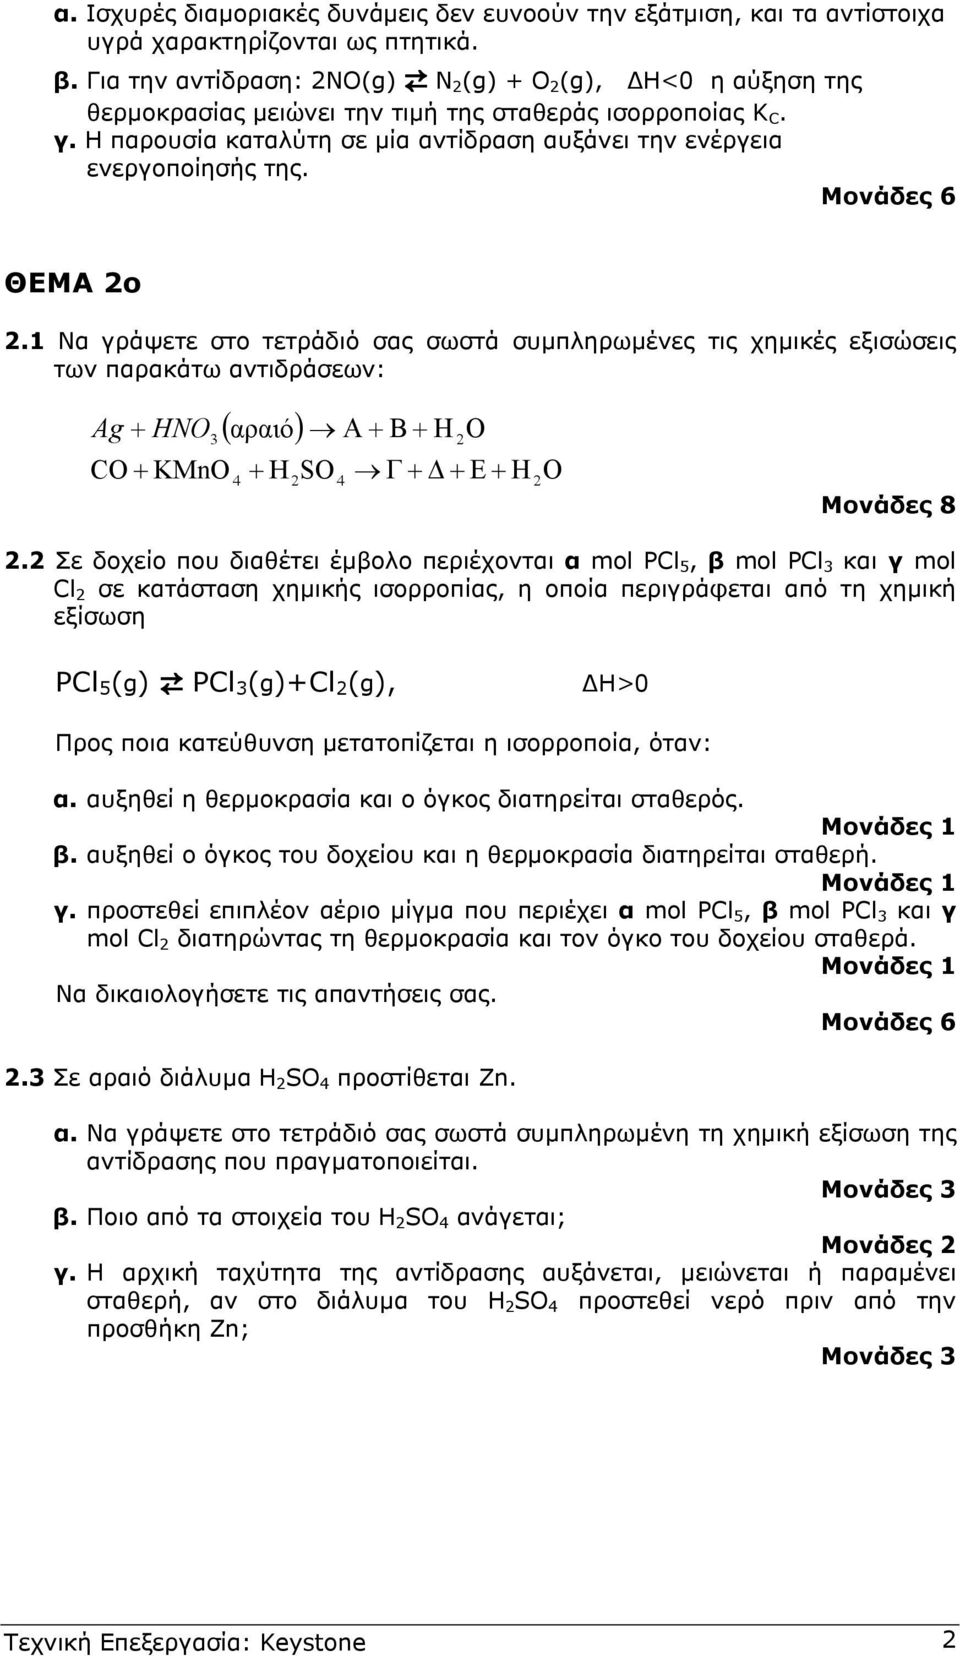 ΘΕΜΑ ο.1 Να γράψετε στο τετράδιό σας σωστά συµπληρωµένες τις χηµικές εξισώσεις των παρακάτω αντιδράσεων: Ag ( ) Α + Β + Η Ο + HNO αραιό O + KMnO 4 + H SO 4 Γ + + Ε + Η Ο Μονάδες 8.